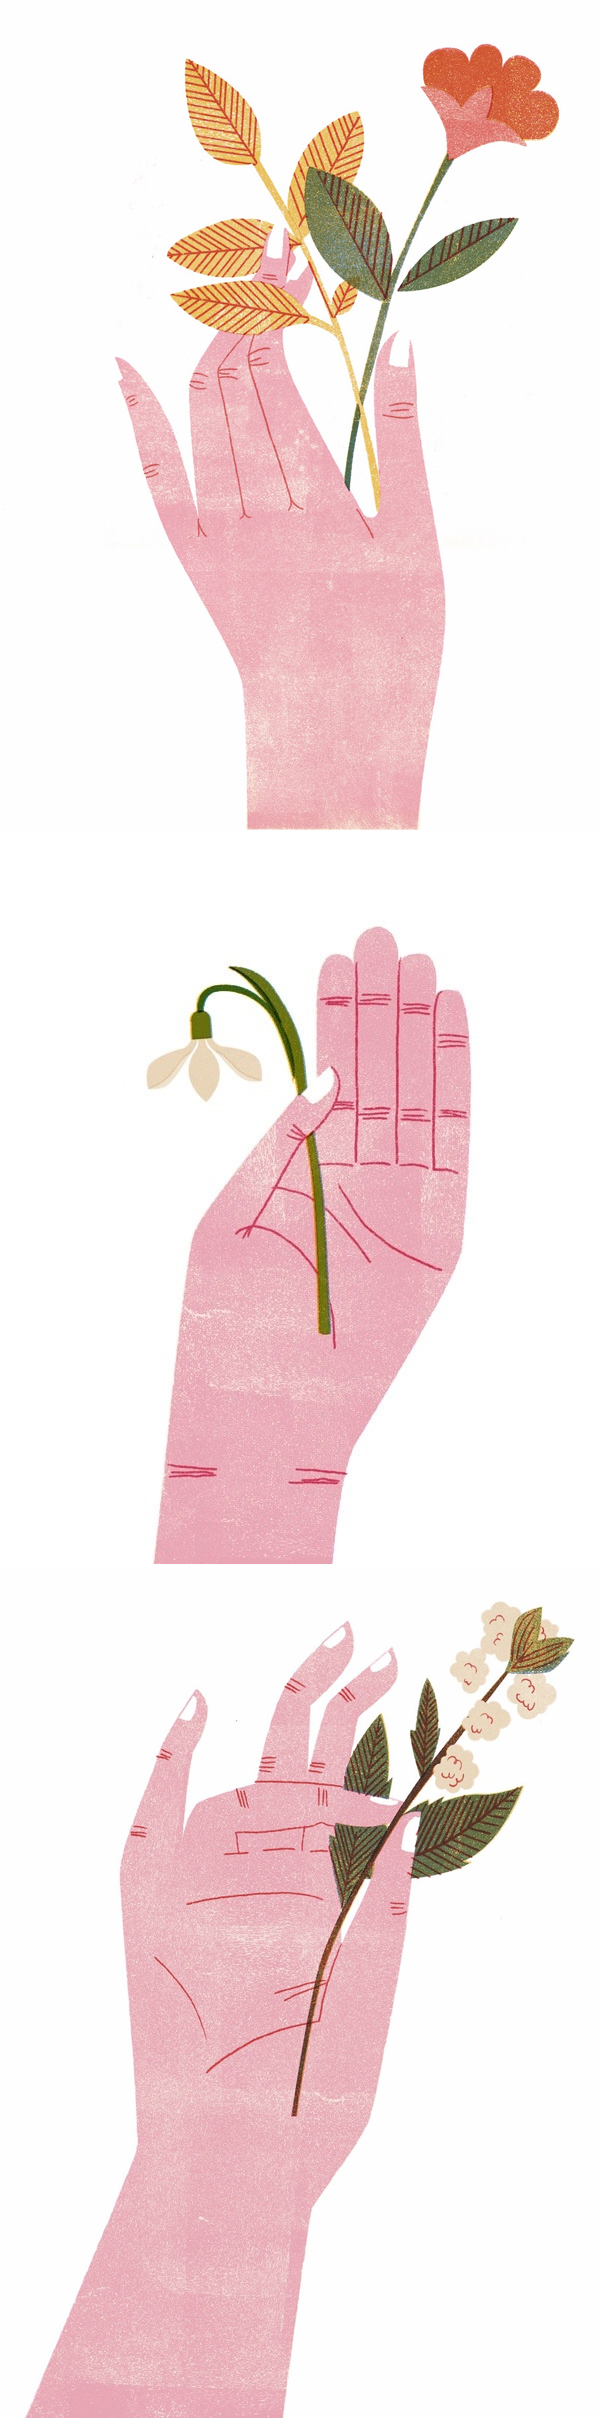 Barbara Dziadosz - Hands with Flowers | Mãos e Flores